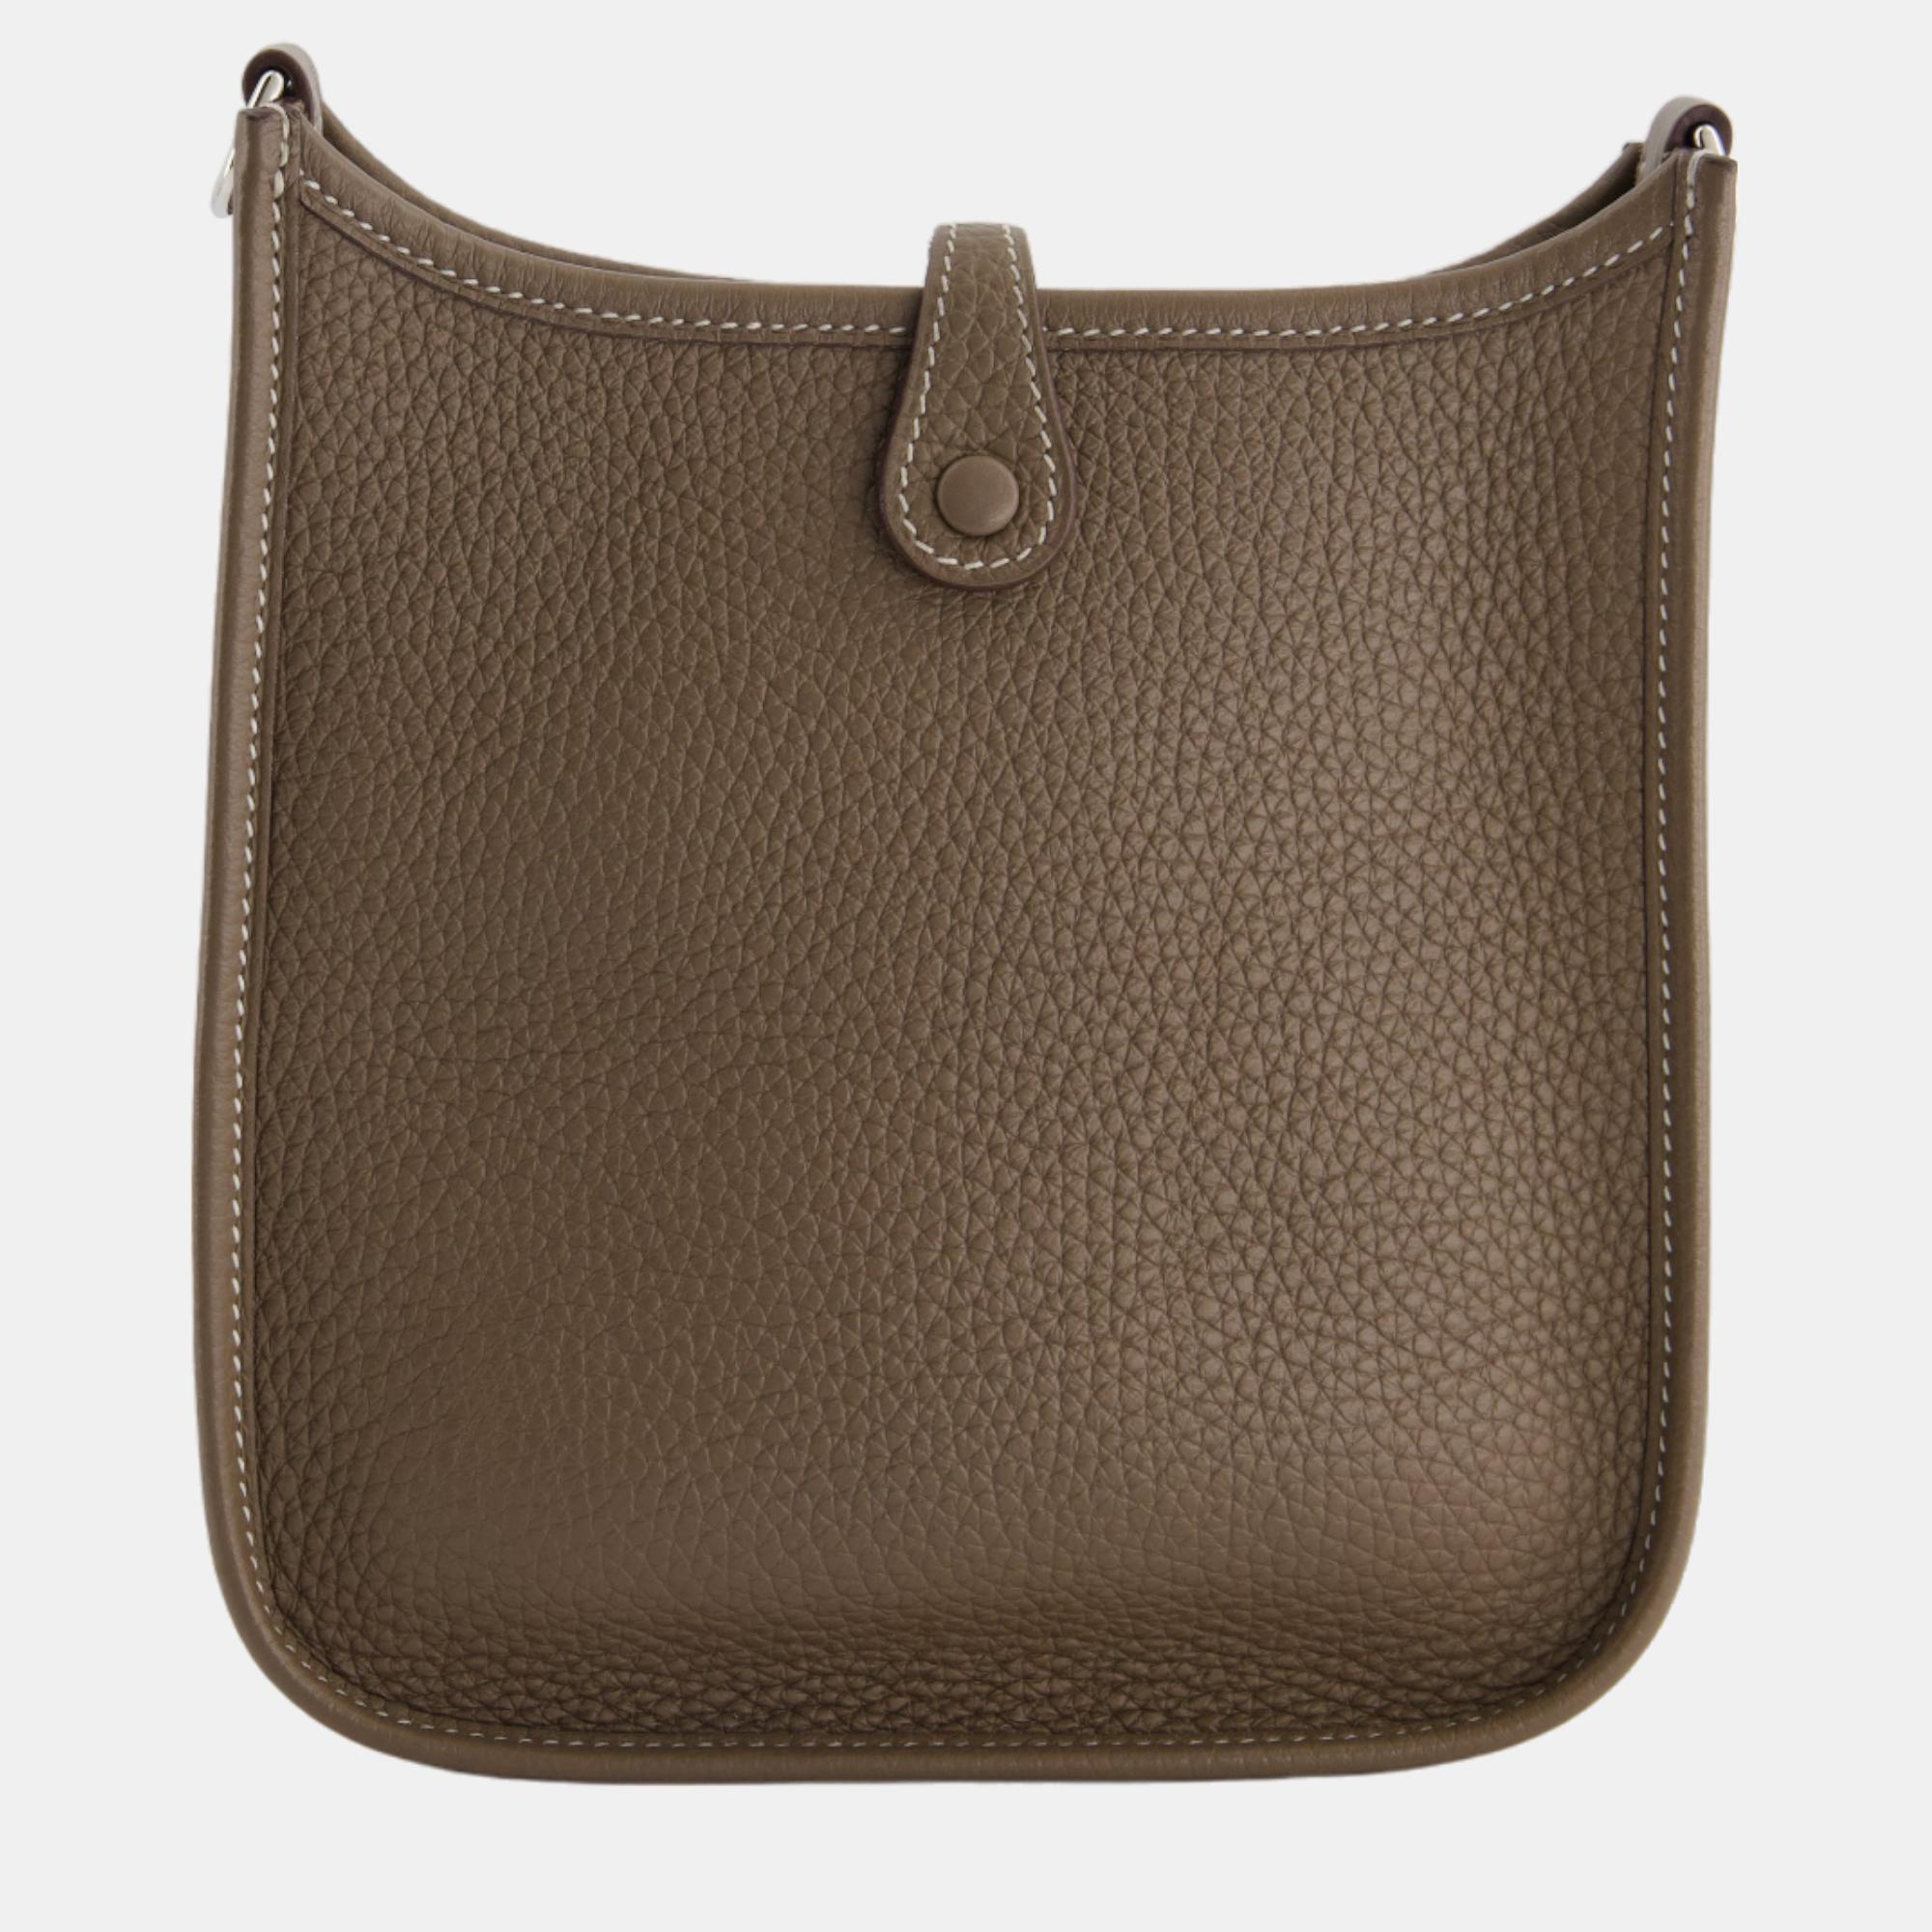 Hermes Mini Evelyne Bag In Etoupe Togo Leather With Palladium Hardware